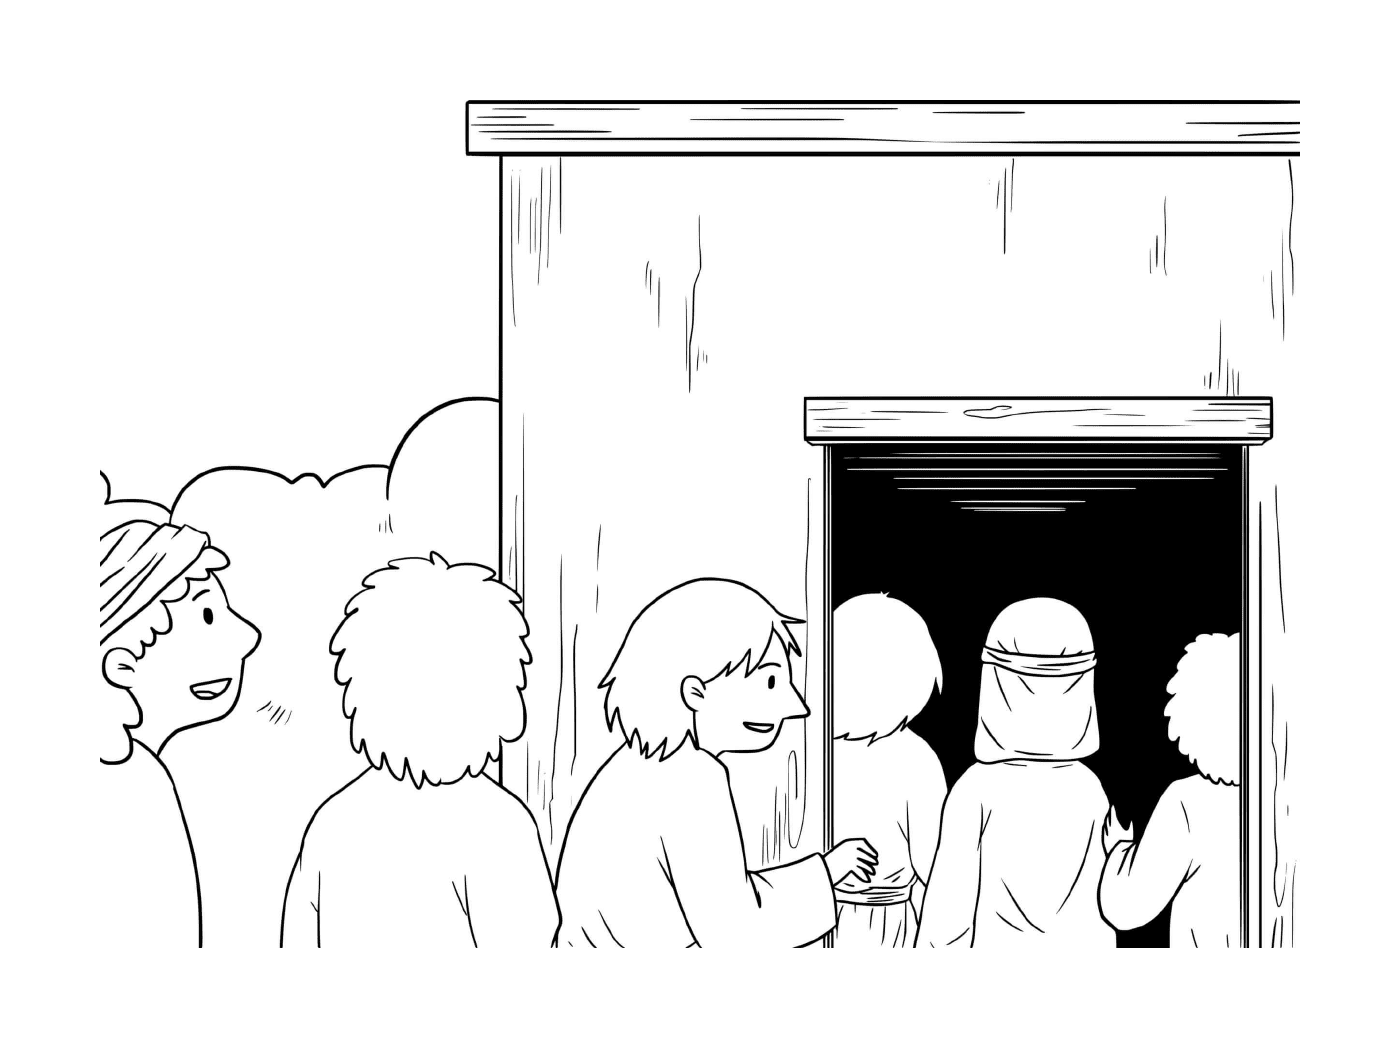   Groupe de personnes devant un bâtiment 